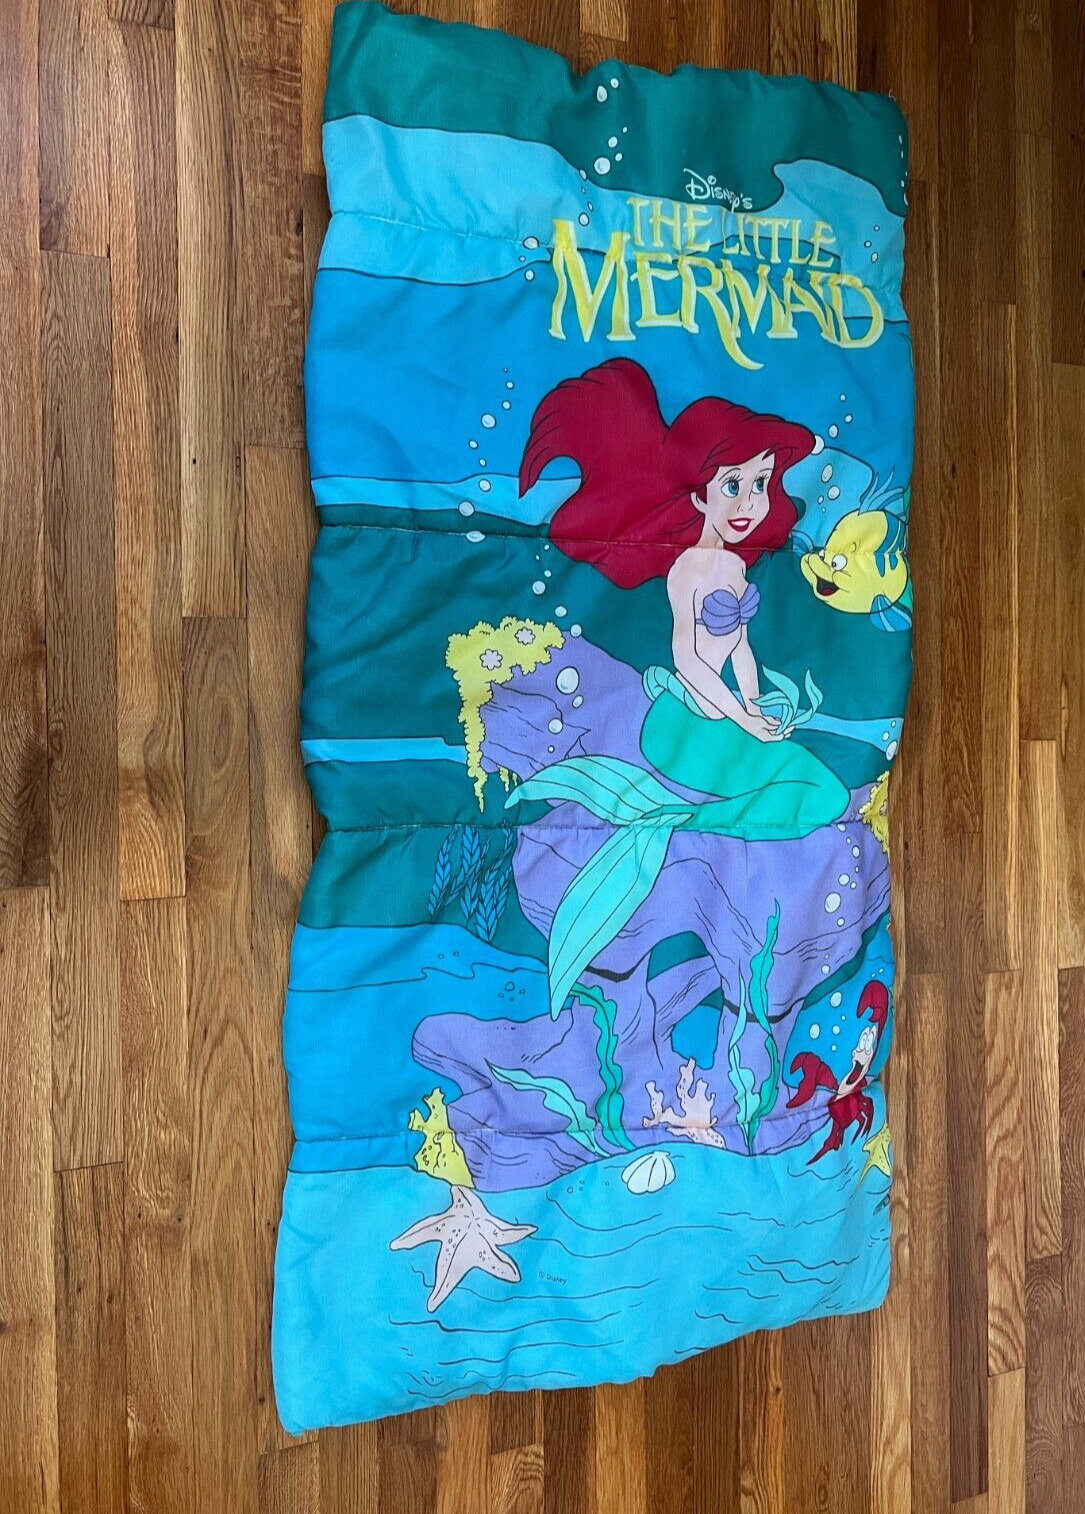 Disney The Little Mermaid Sleeping Bag 27x53 Vintage 1990s Ariel Flounder